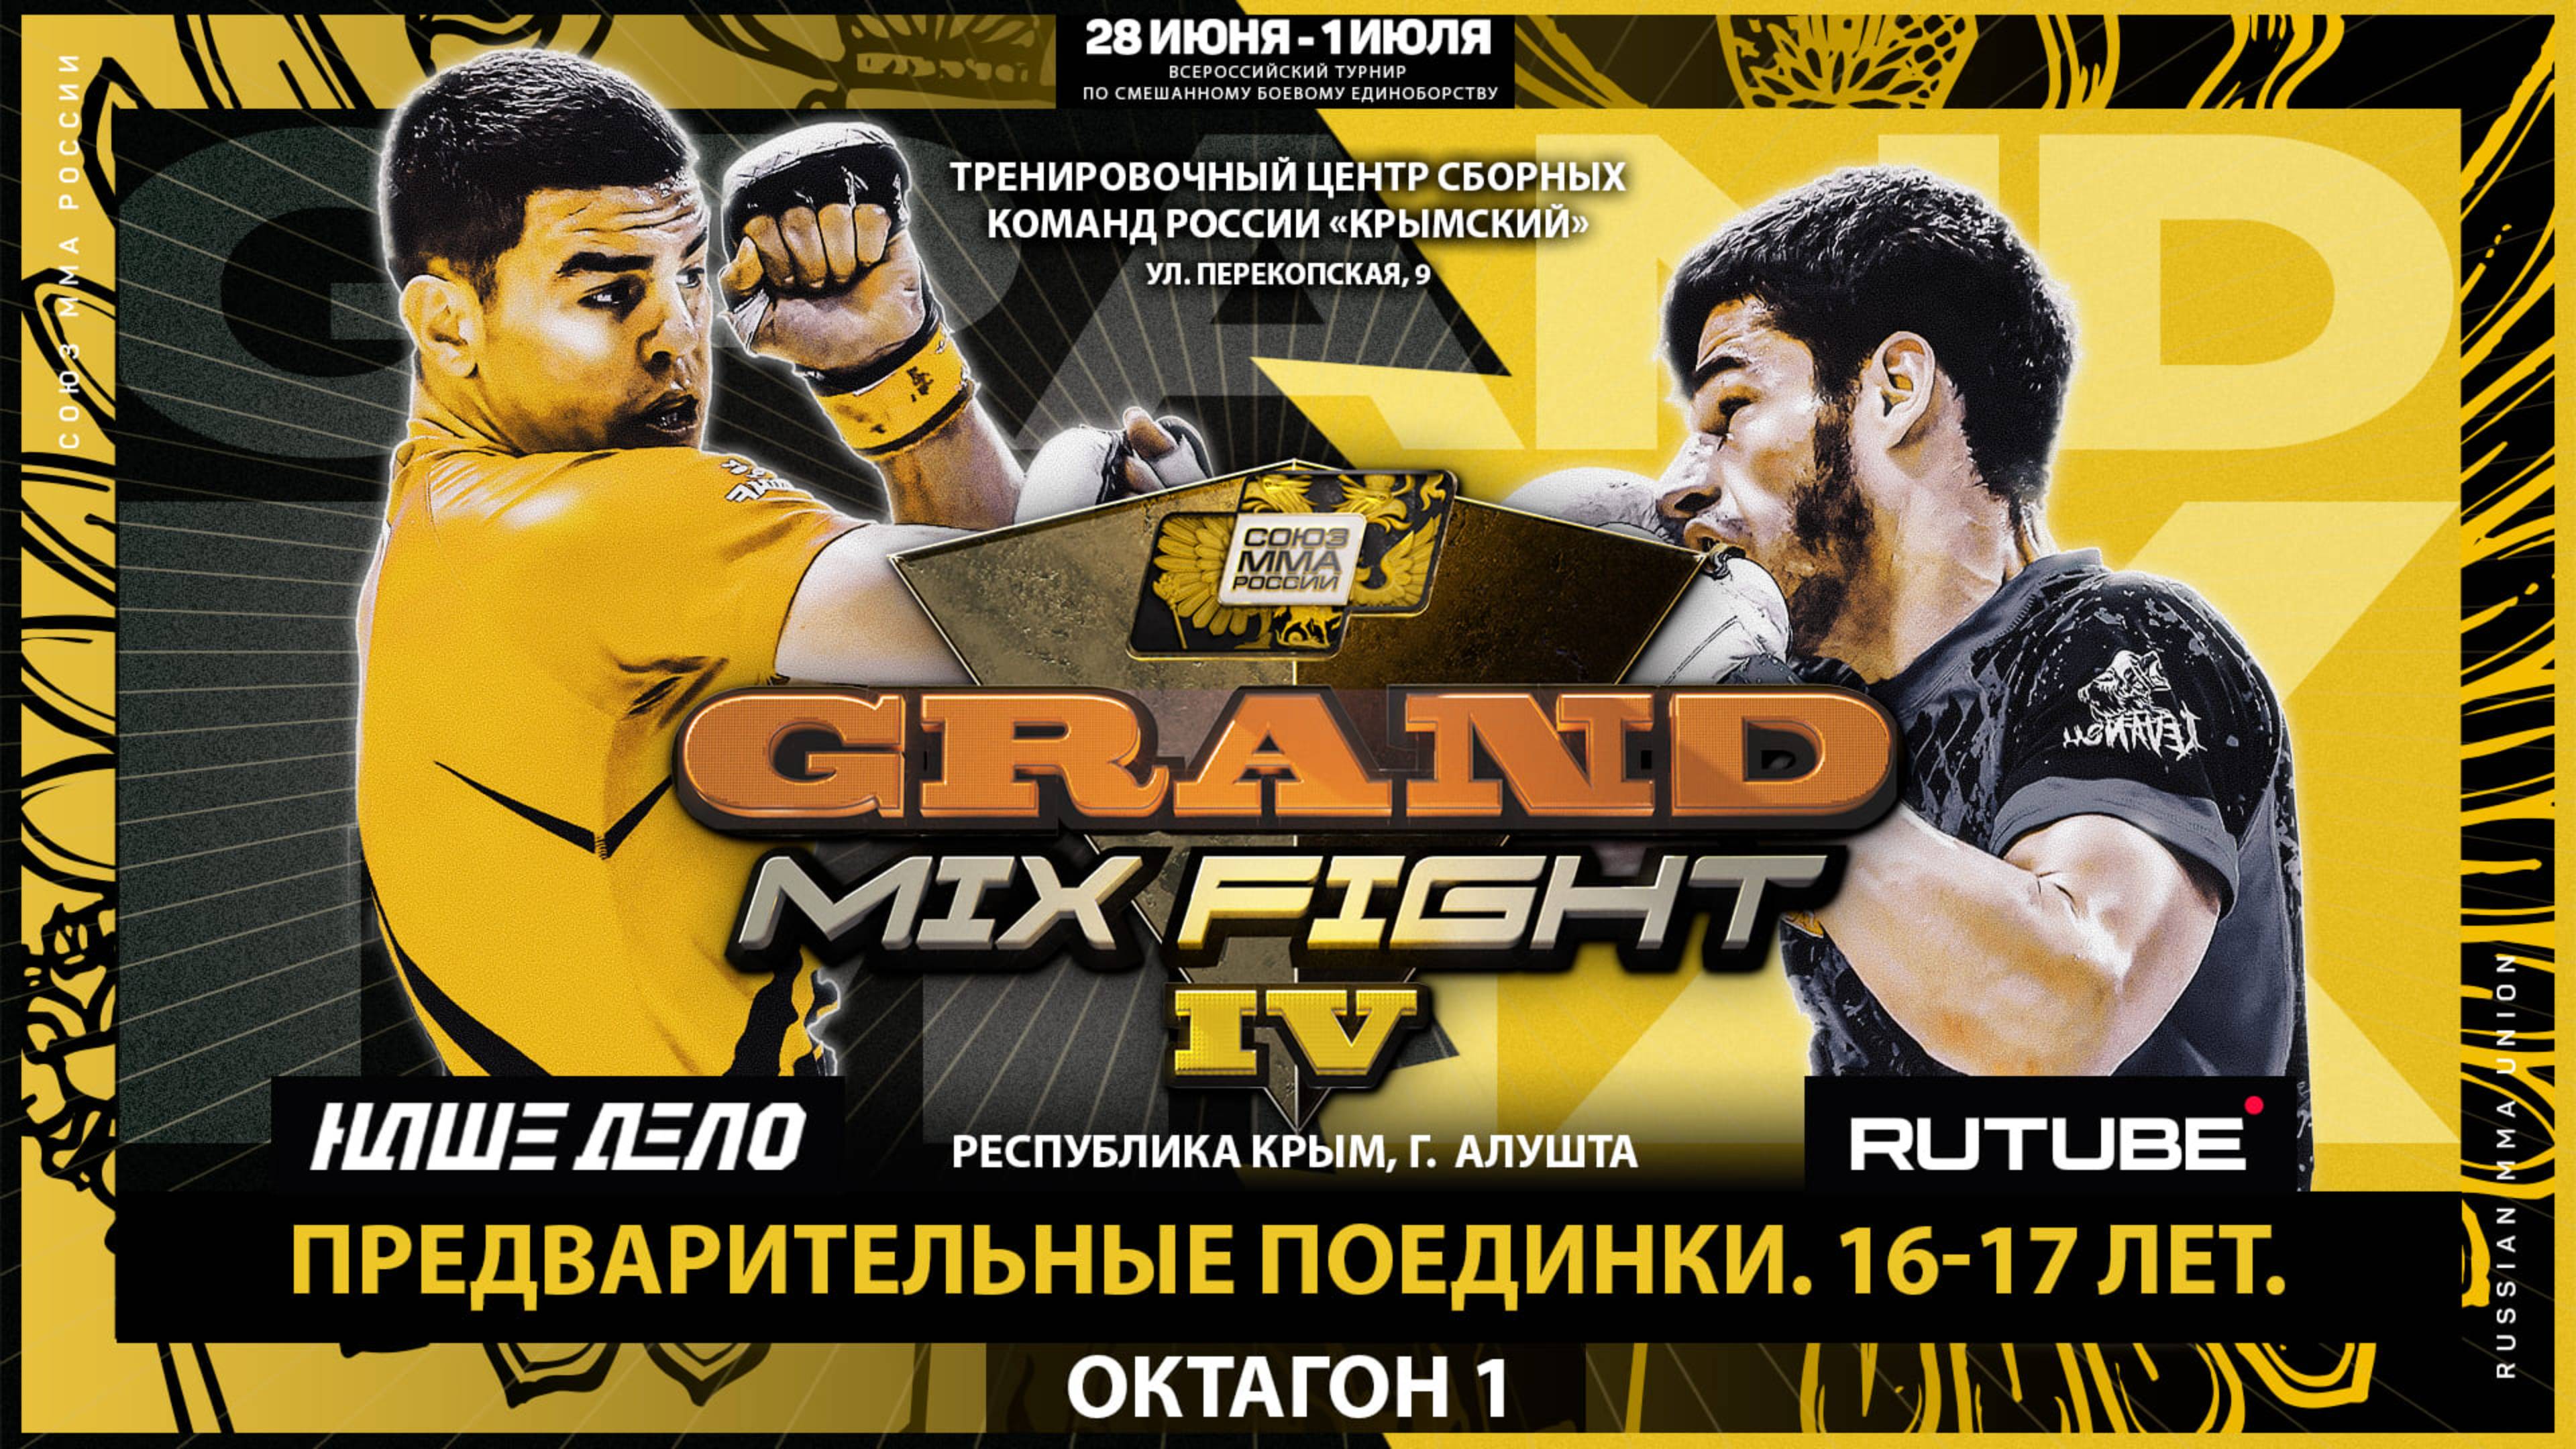 Grand Mix Fight IV. Финалы 14-15 лет. Предварительные поединки 18-20 лет. Октагон 1